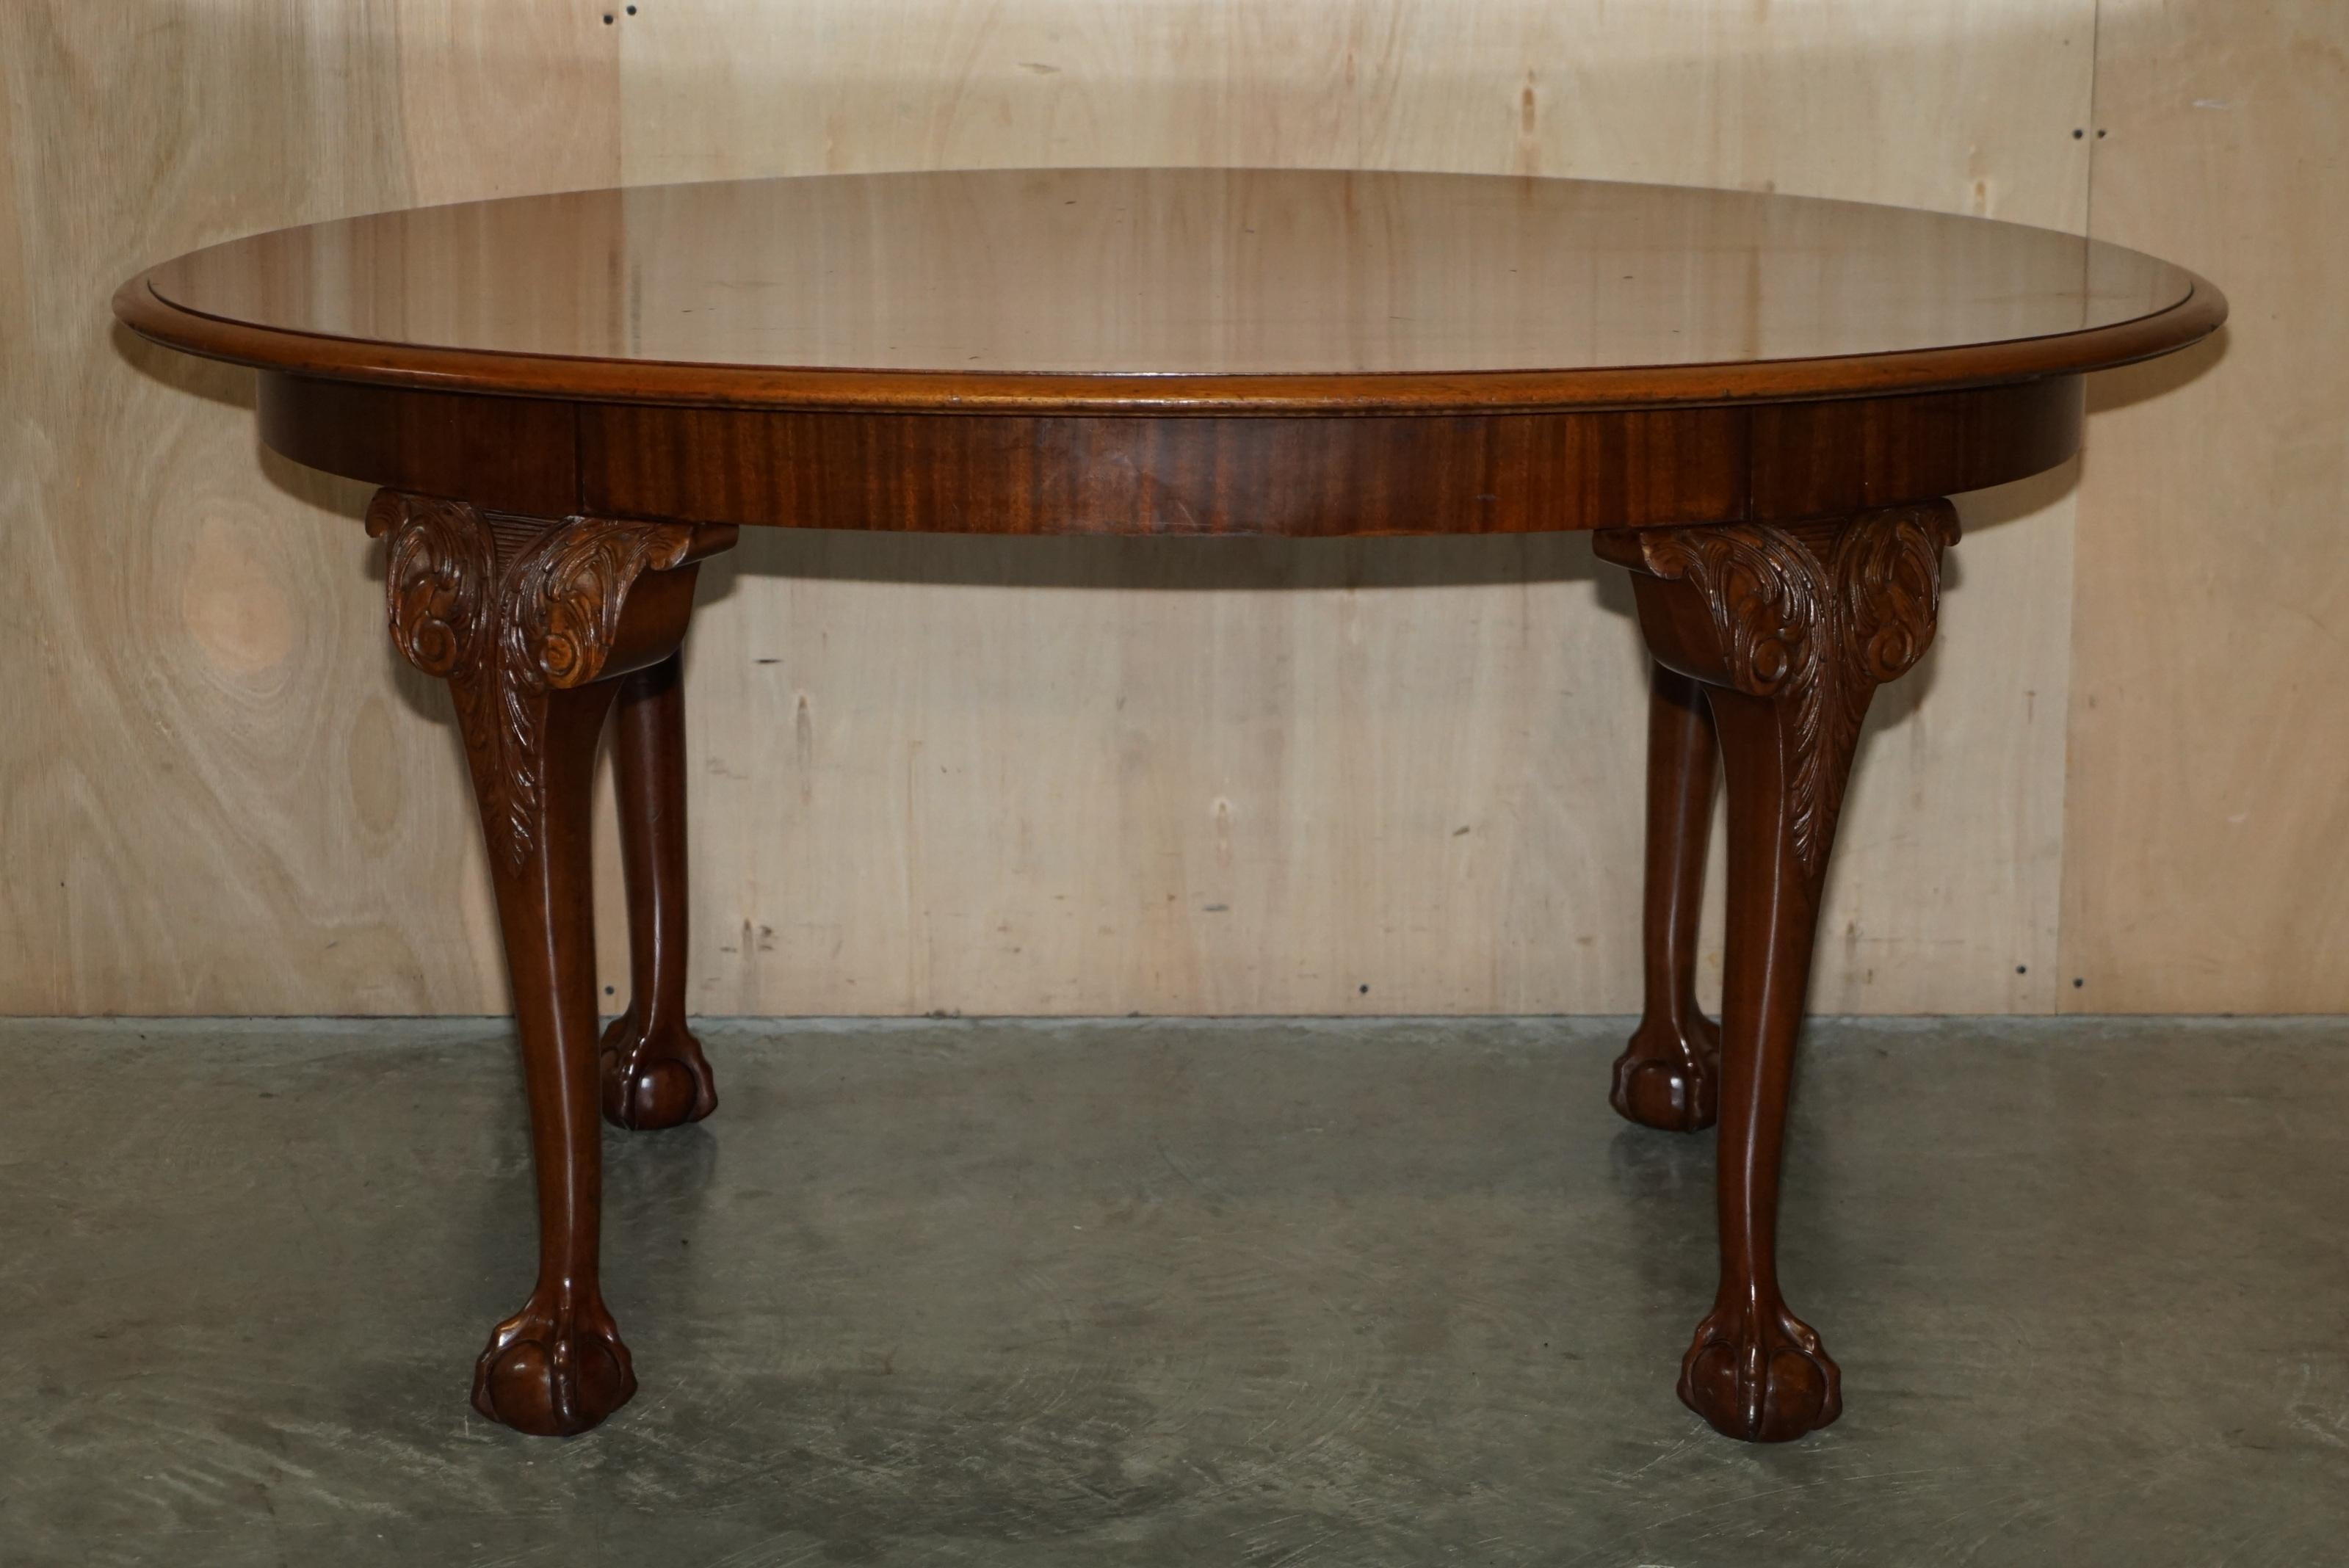 Wir freuen uns, diesen schönen antiken Esstisch aus englischem Nussbaumholz aus den 1920er Jahren mit handgeschnitzten Klauen- und Kugelfüßen zum Verkauf anzubieten. 

Ein sehr gut gemachter und dekorativer Tisch mit langen, eleganten